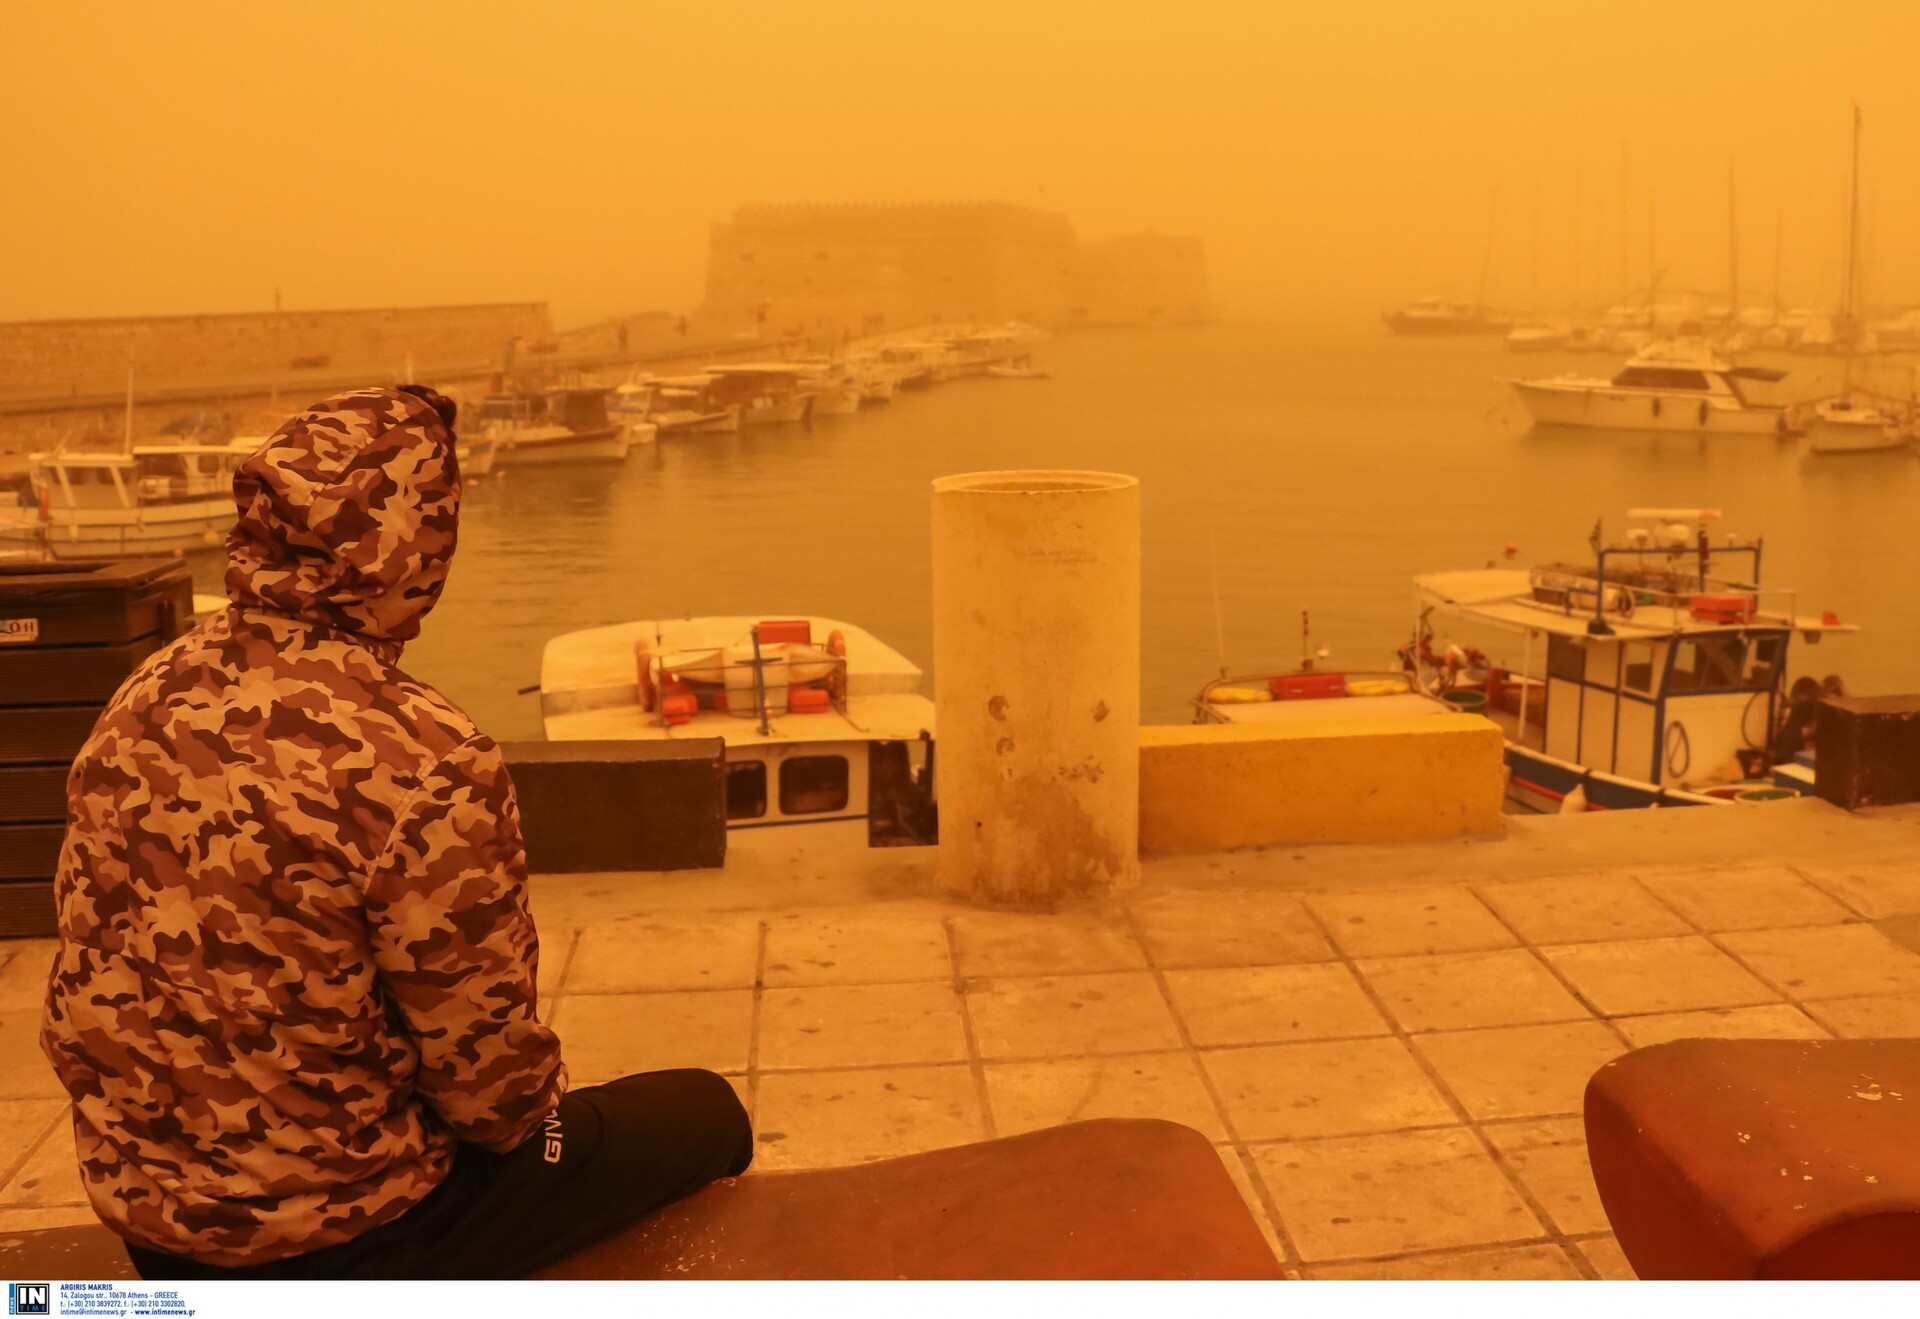 Δείτε τις πρωτοφανείς εικόνες από το Ηράκλειο σήμερα - Η Κρήτη καλύφθηκε  από αφρικανική σκόνη | LiFO